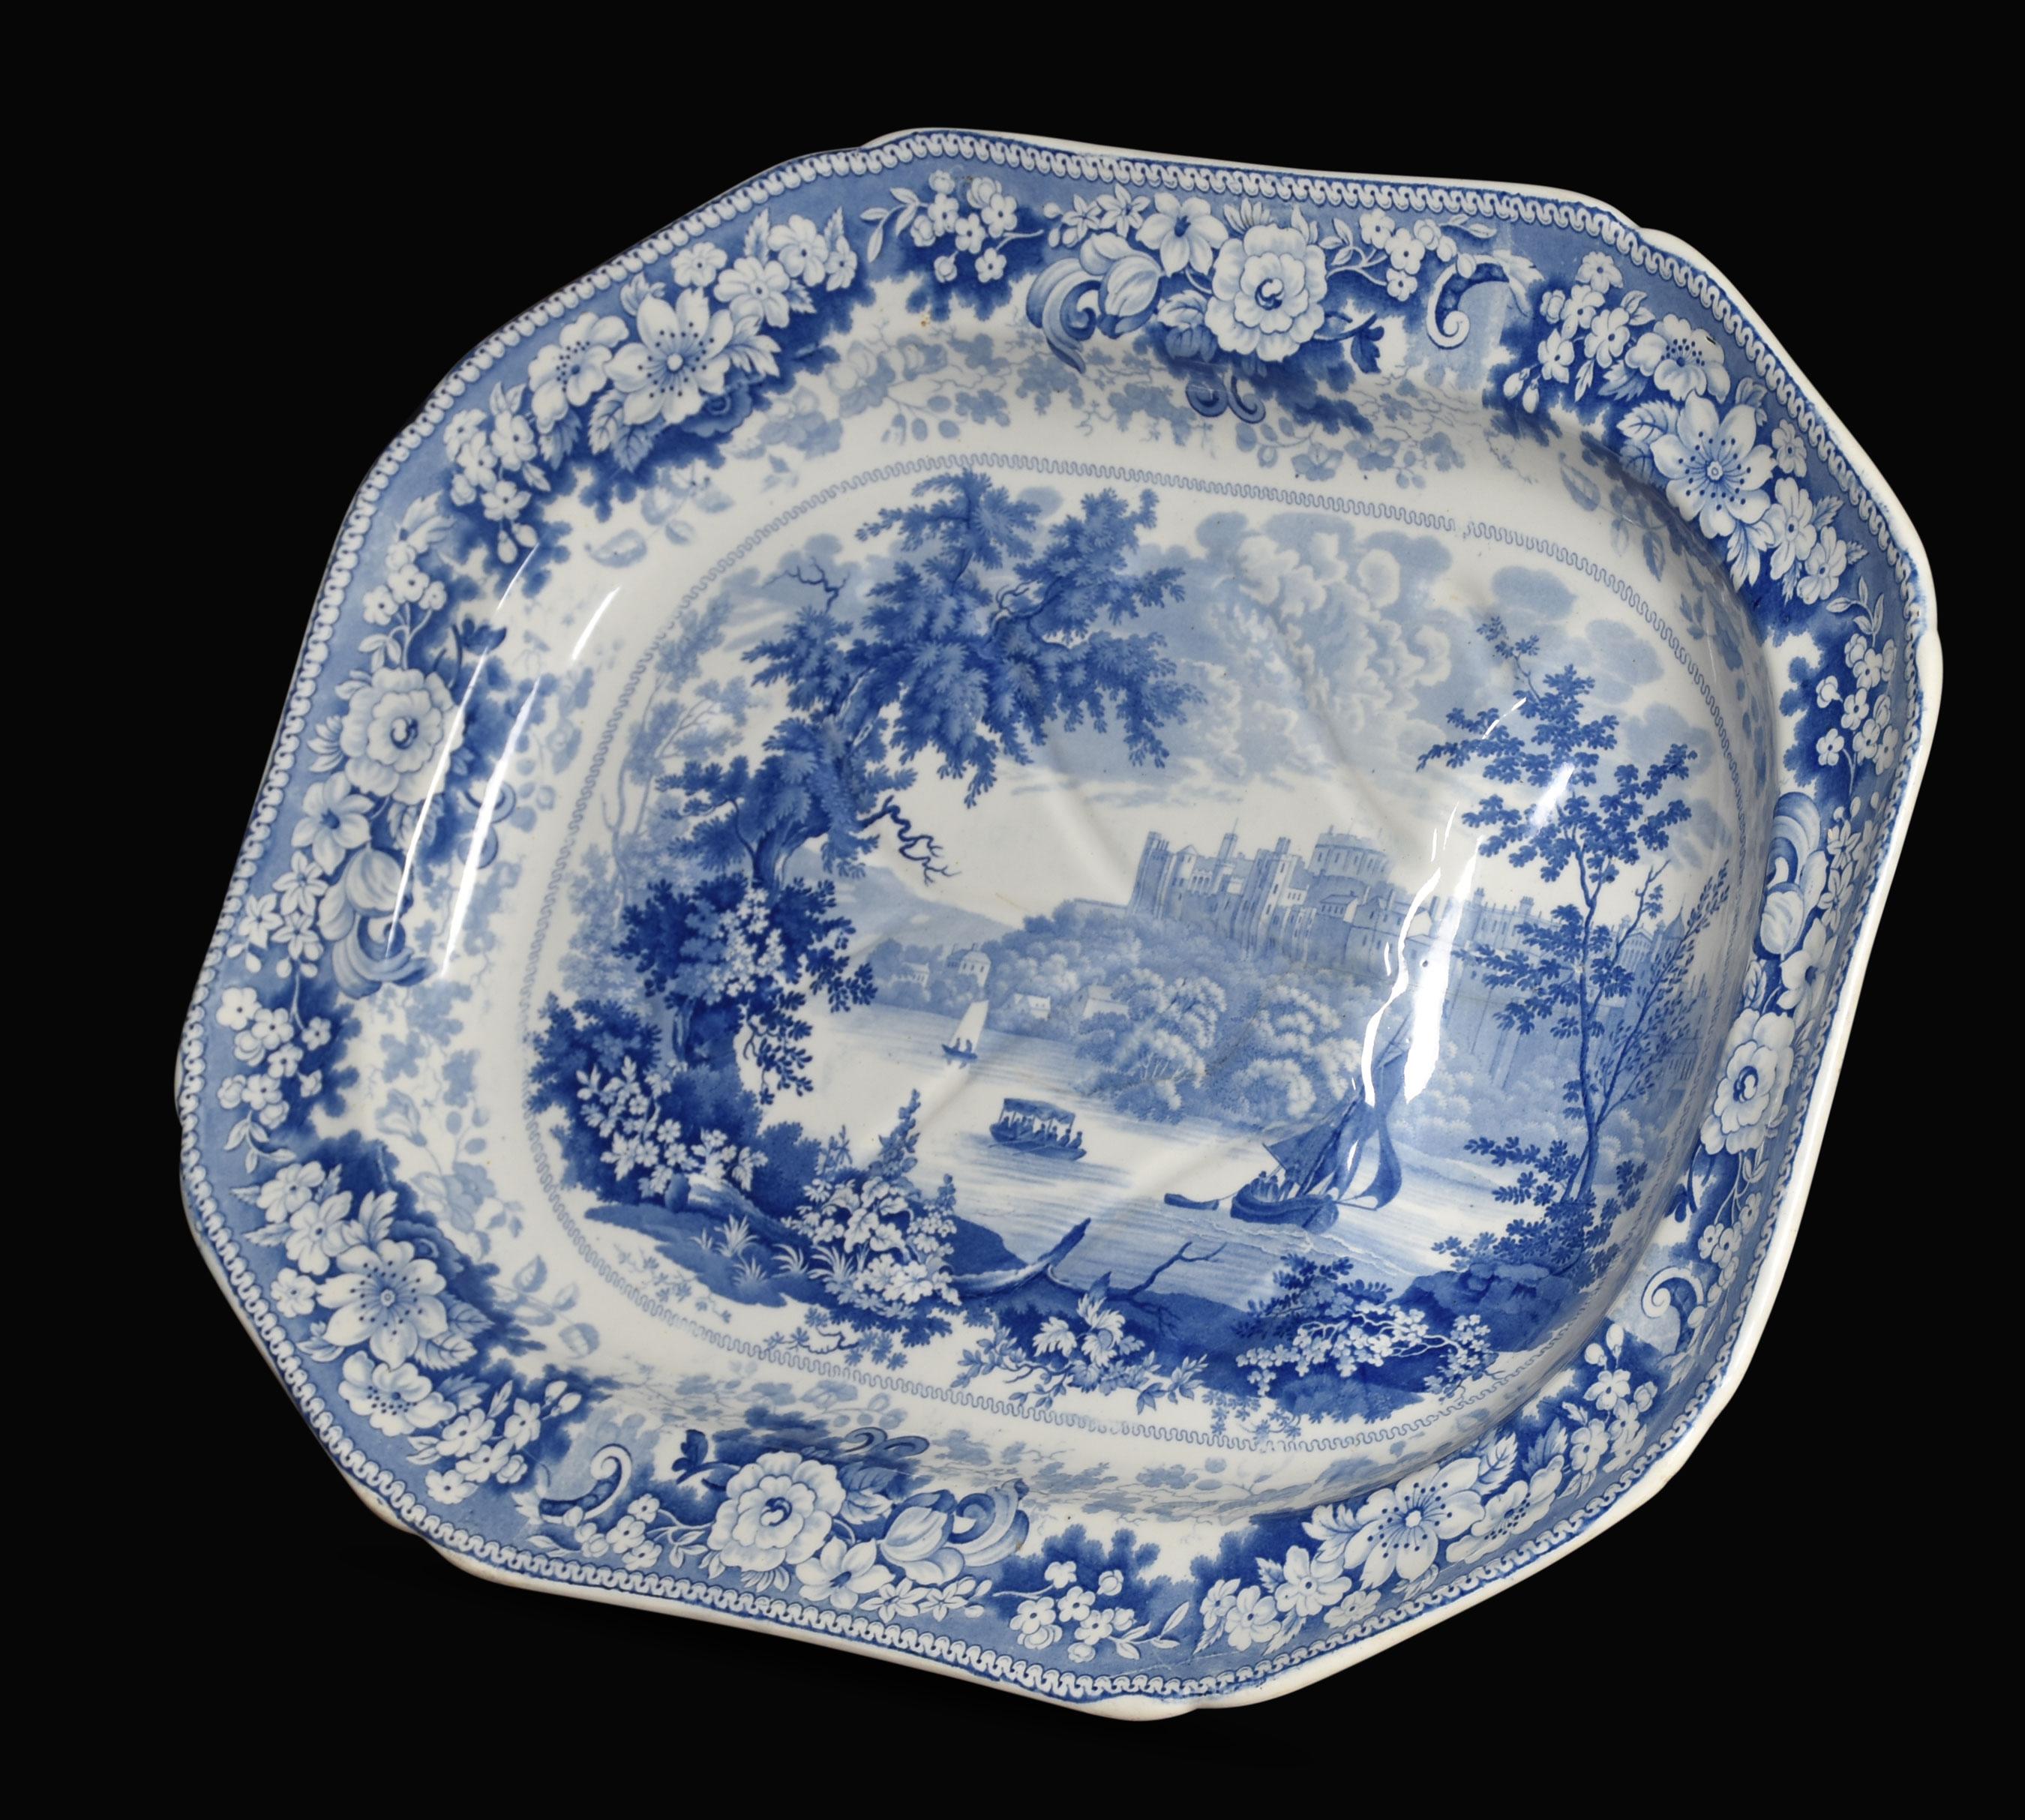 Assiette à égoutter la viande en bleu et blanc du 19e siècle de Staffordshire, représentant un motif de paysage britannique.
Dimensions
Hauteur 3 pouces
Largeur 20,5 pouces
Profondeur 16 pouces.